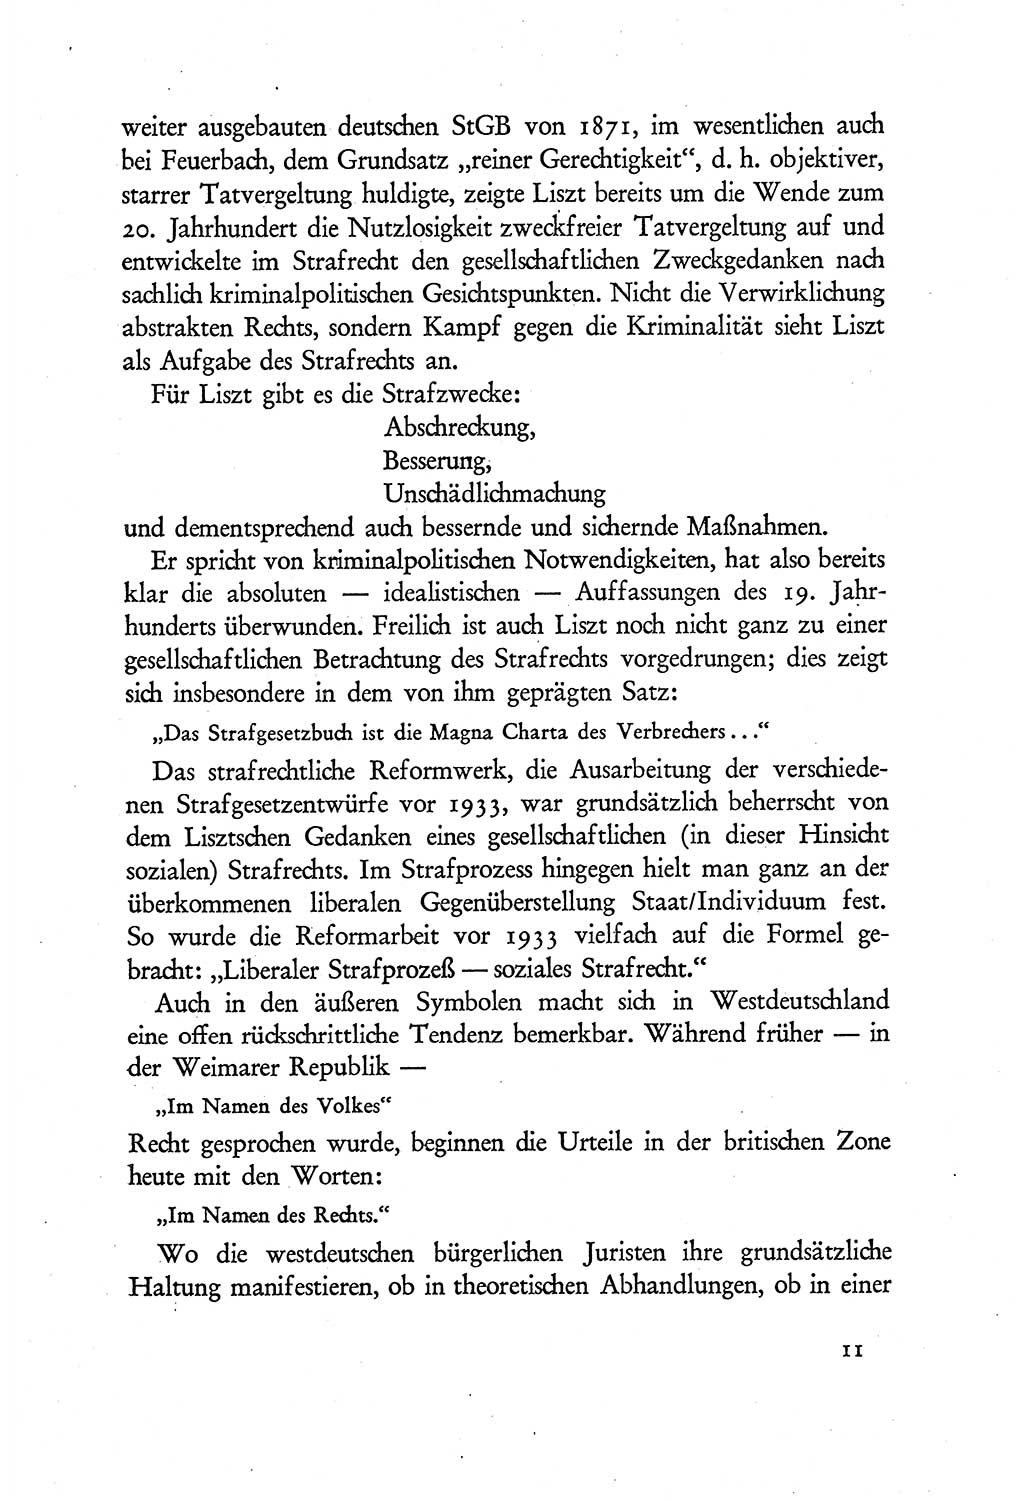 Probleme eines demokratischen Strafrechts [Sowjetische Besatzungszone (SBZ) Deutschlands] 1949, Seite 11 (Probl. Strafr. SBZ Dtl. 1949, S. 11)